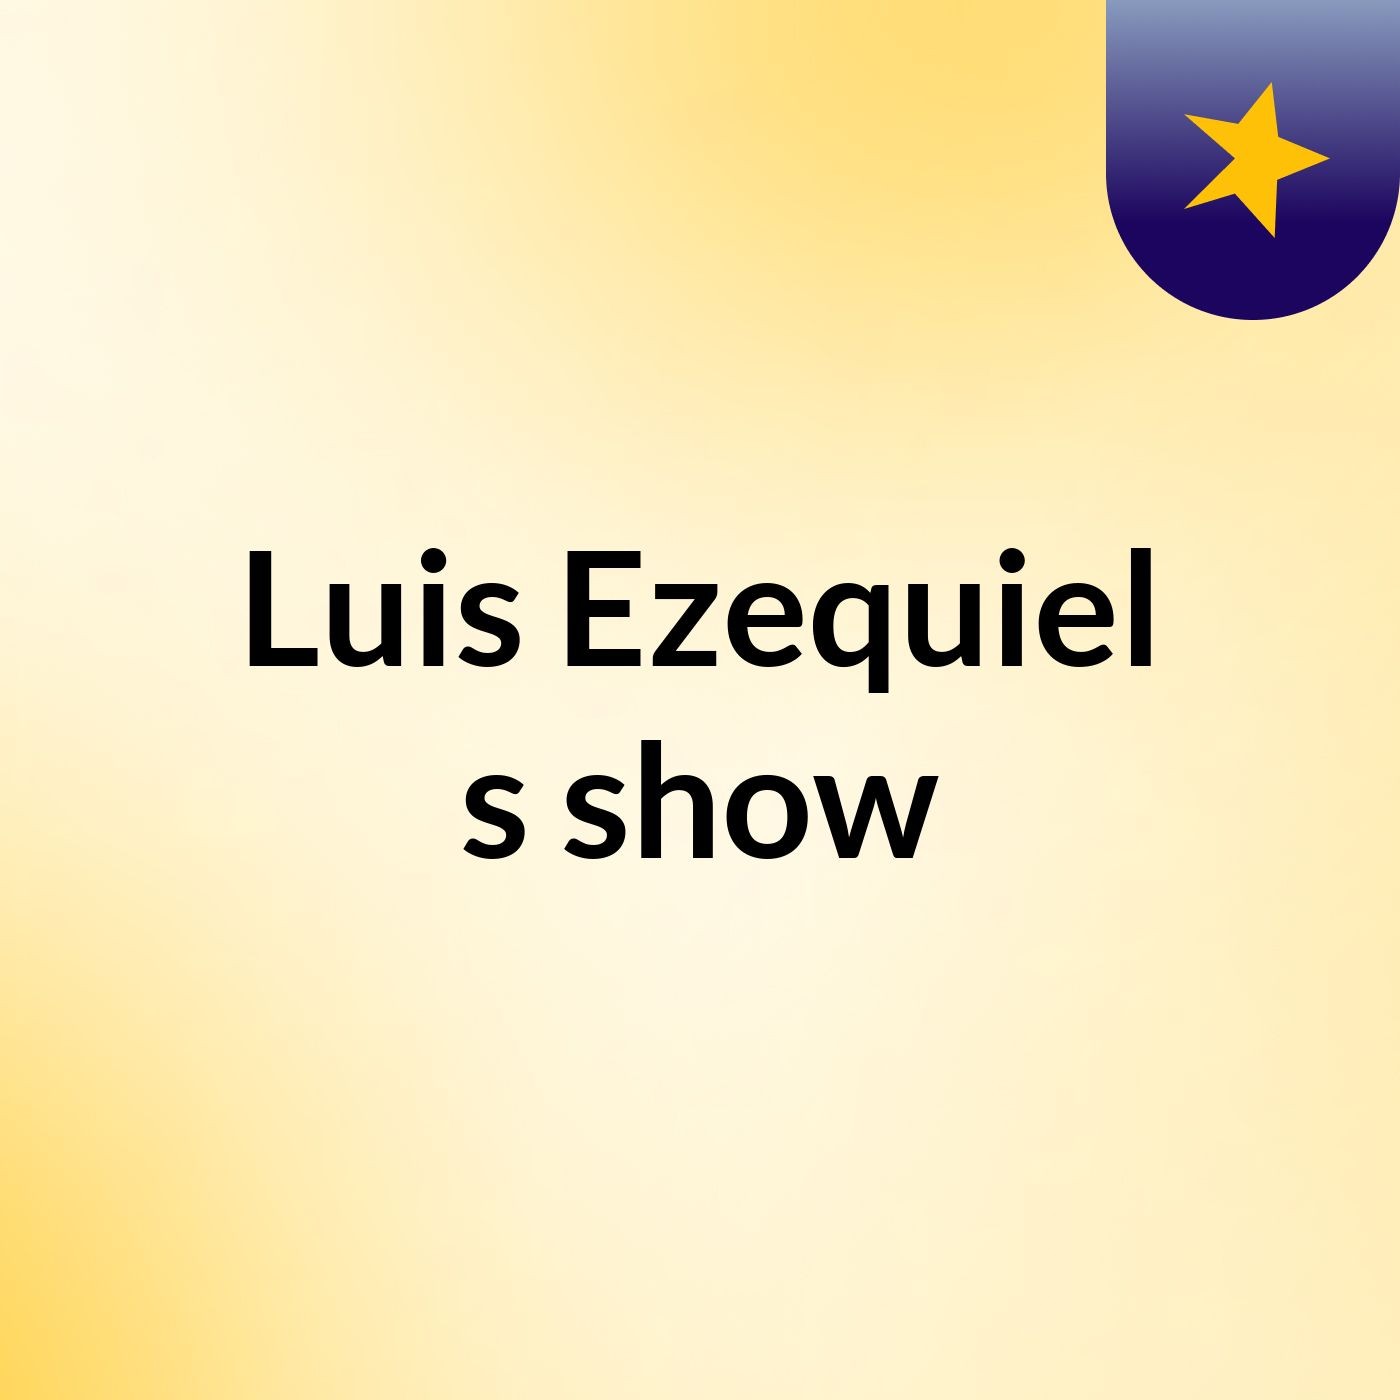 Luis Ezequiel's show